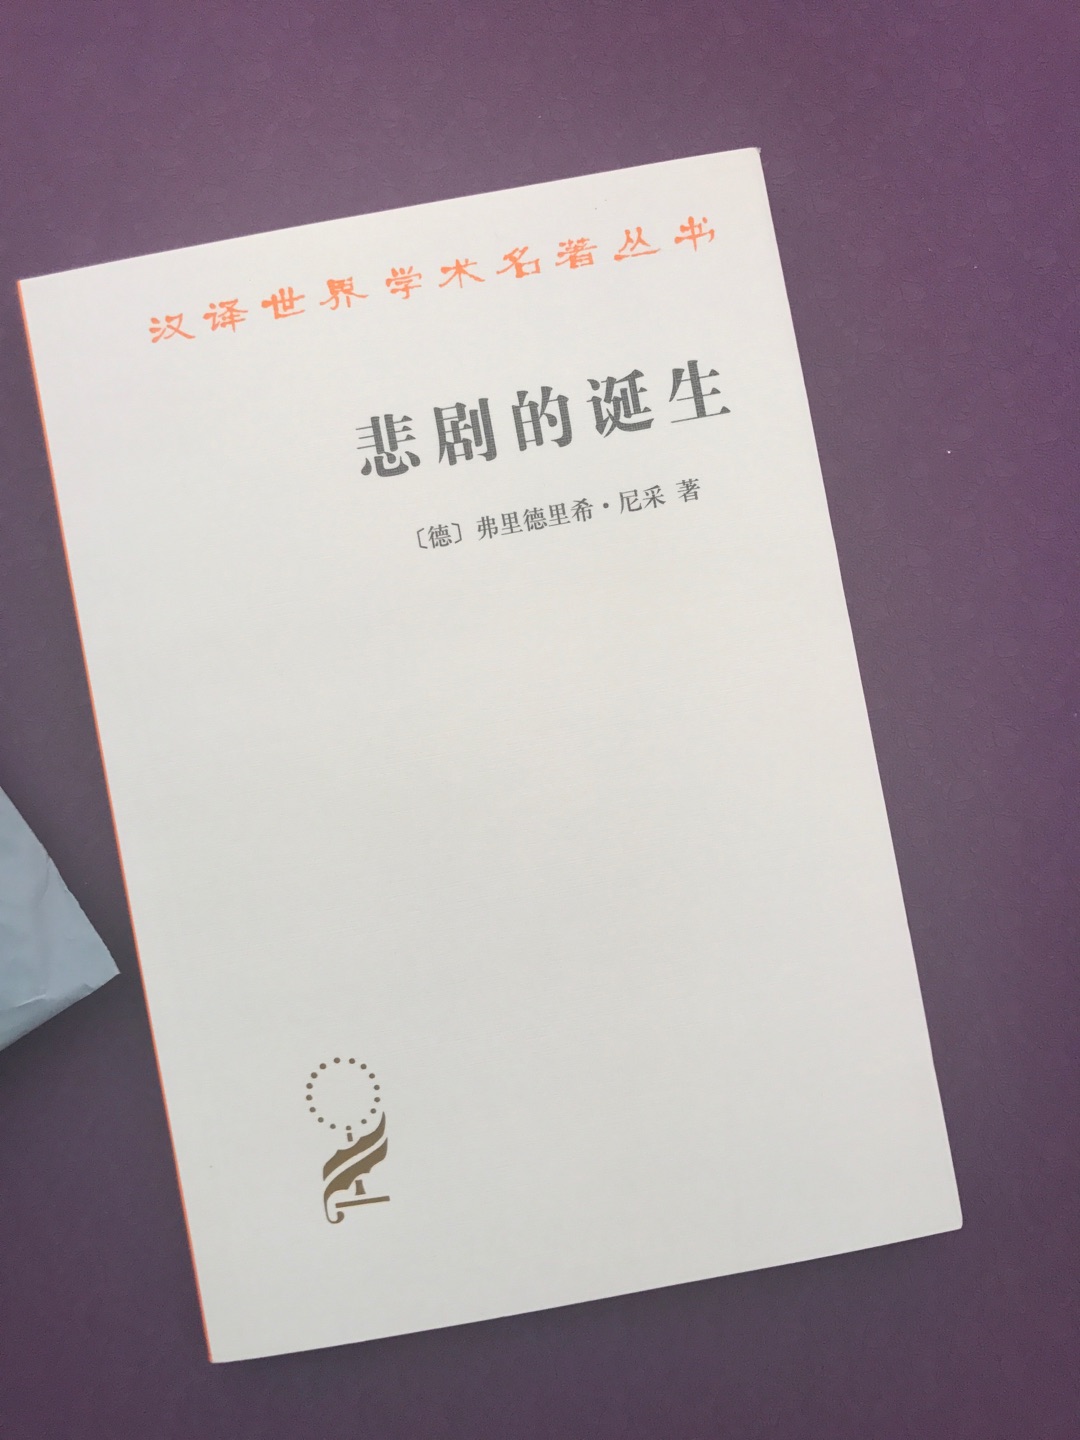 昆山发到深圳的书，棒棒的，外观完好，书也是全新，与之前收到的比，稍得几分安慰